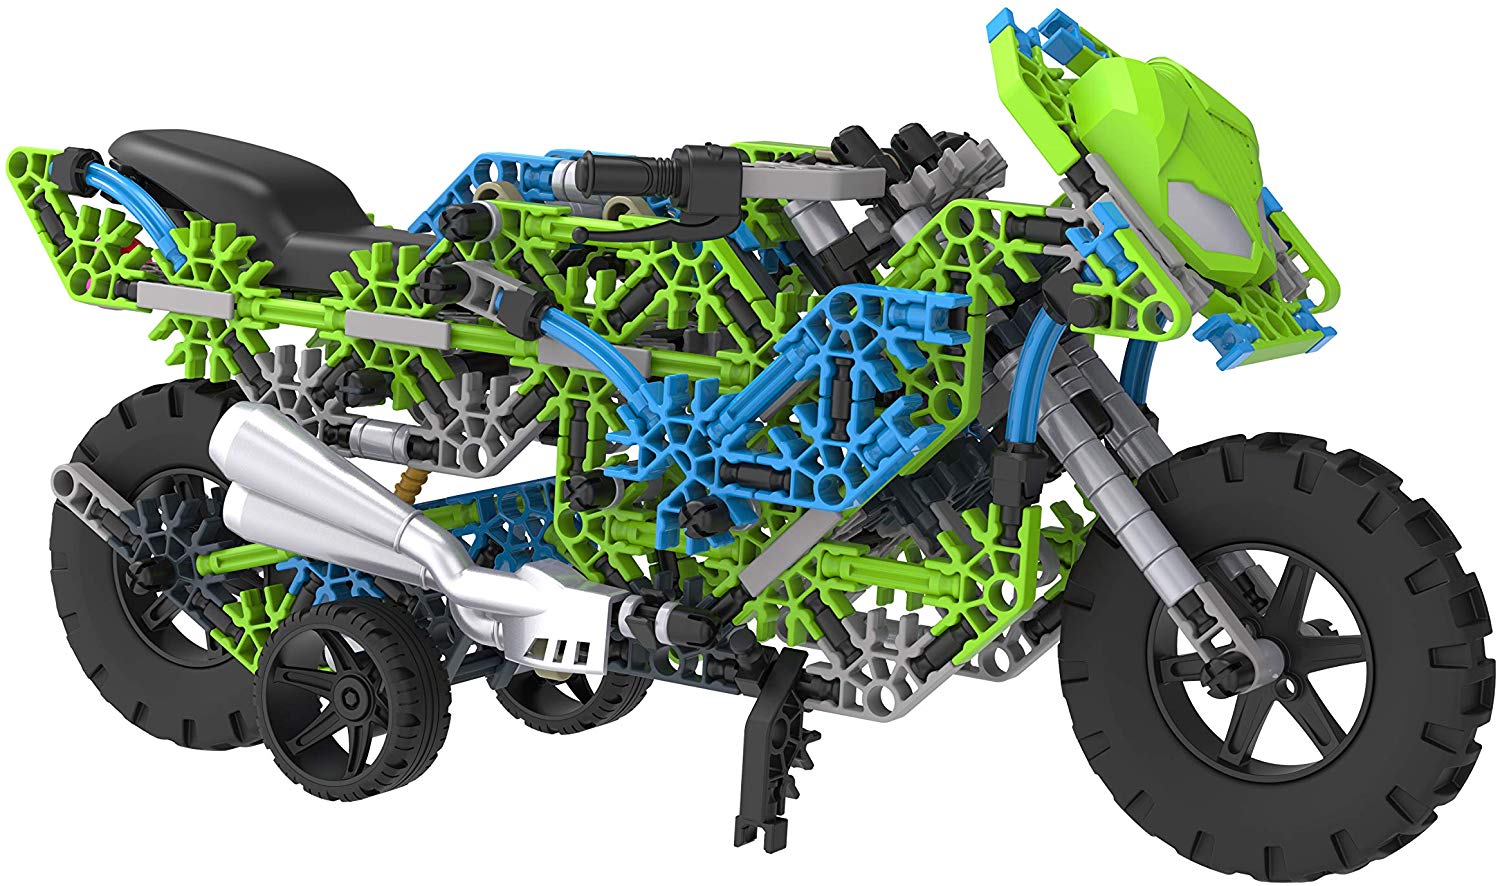 Mega juego de construcción motocicleta de 456 piezas